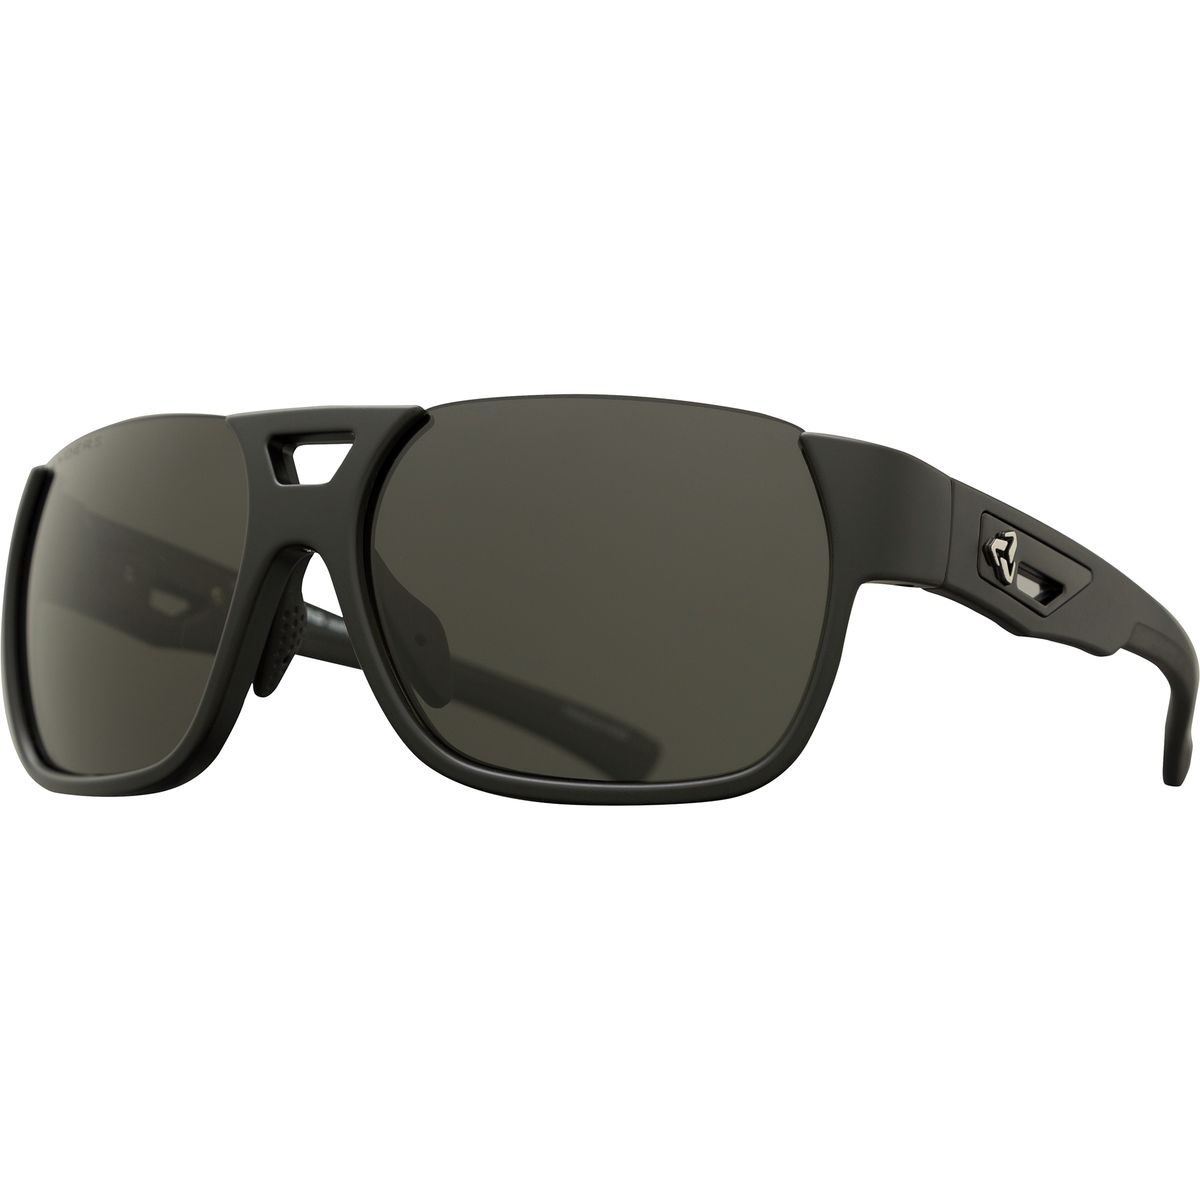 Ryders Eyewear Rotor Sunglasses Polarized Mens